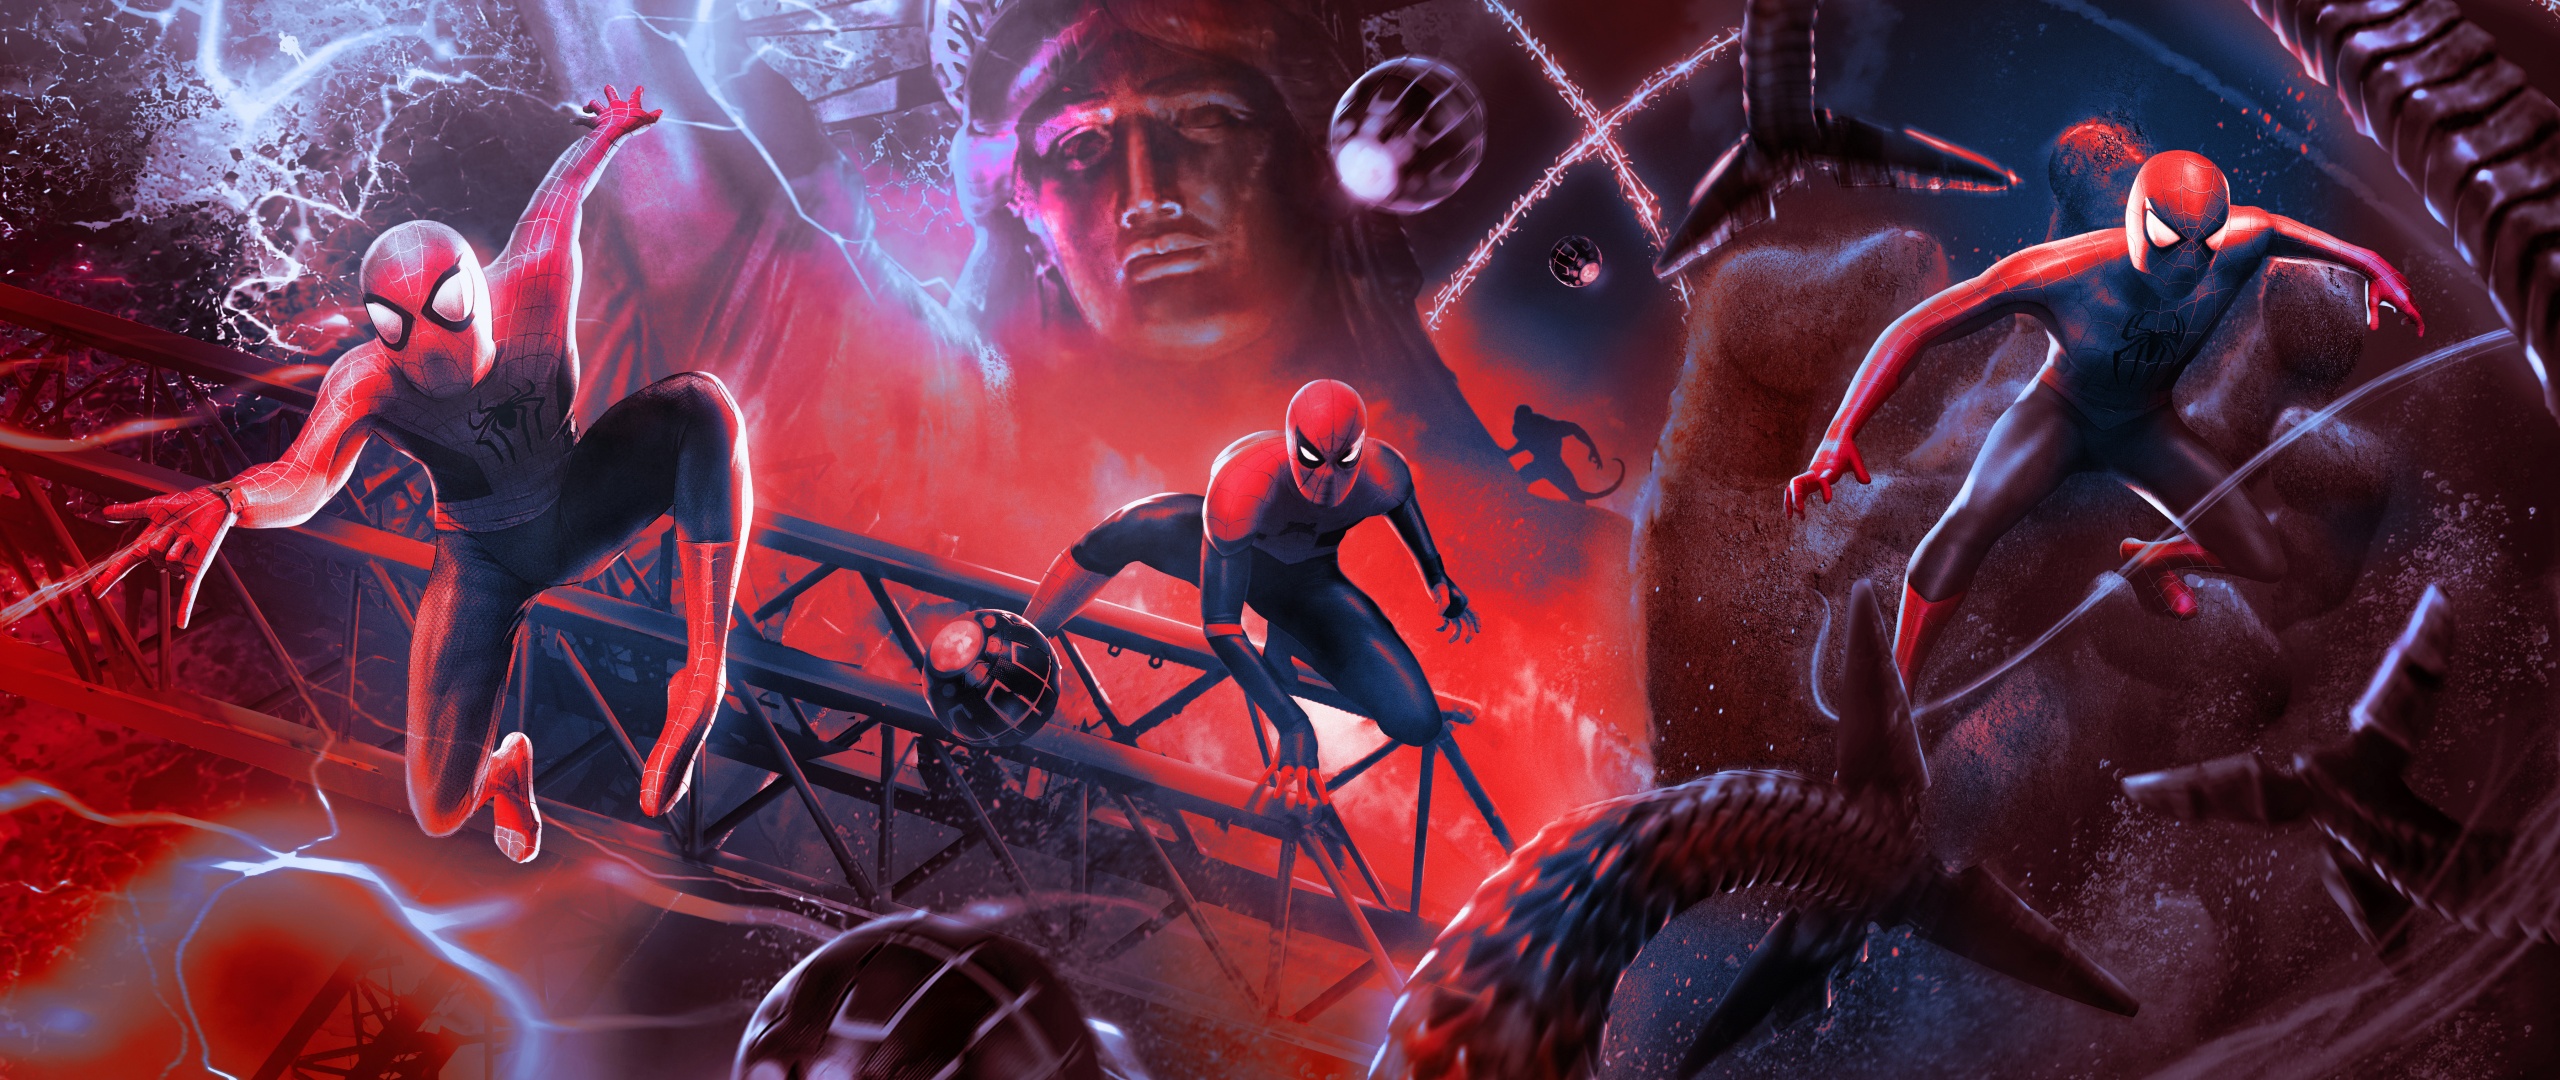 Chào mừng đến với bộ sưu tập nền phông Spider-Man: No Way Home Wallpaper 4K - Marvel! Hình ảnh sẽ giúp bạn cảm thấy như mình đang chiến đấu bên cạnh siêu anh hùng Spider-Man. Đem cảm giác kịch tính của bộ phim đến cho màn hình của bạn và cảm nhận sức mạnh của Marvel.